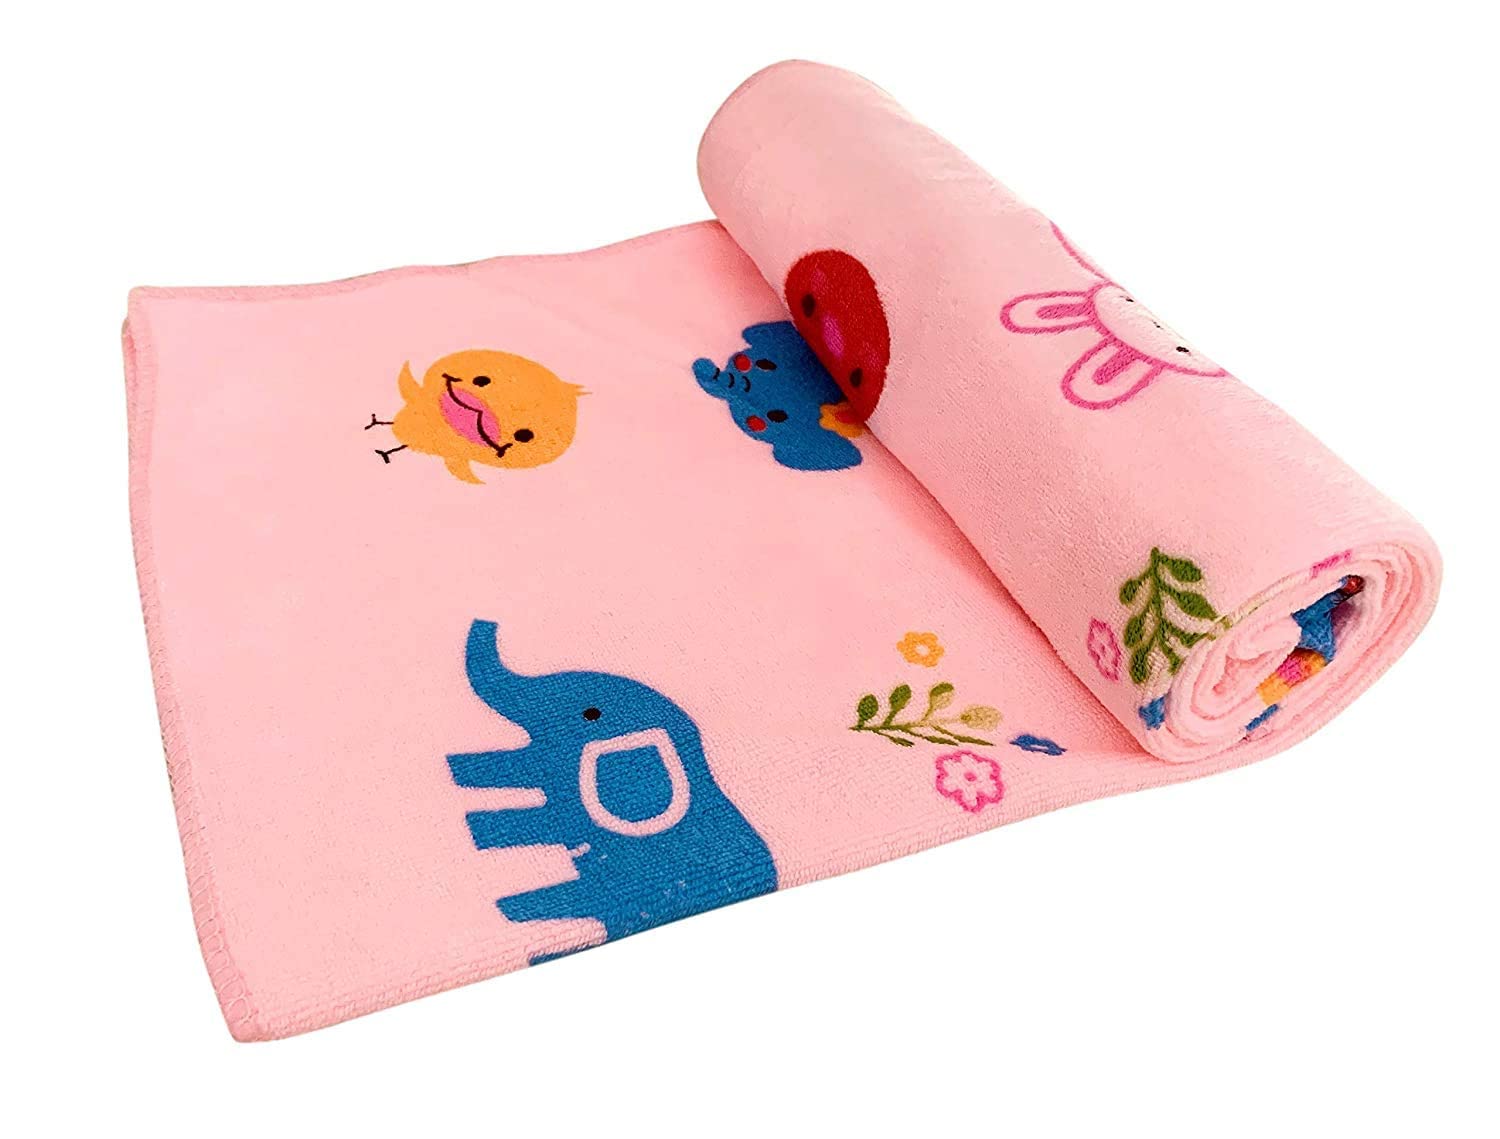 Baby Bath Towel Manufacturers in Rajkot